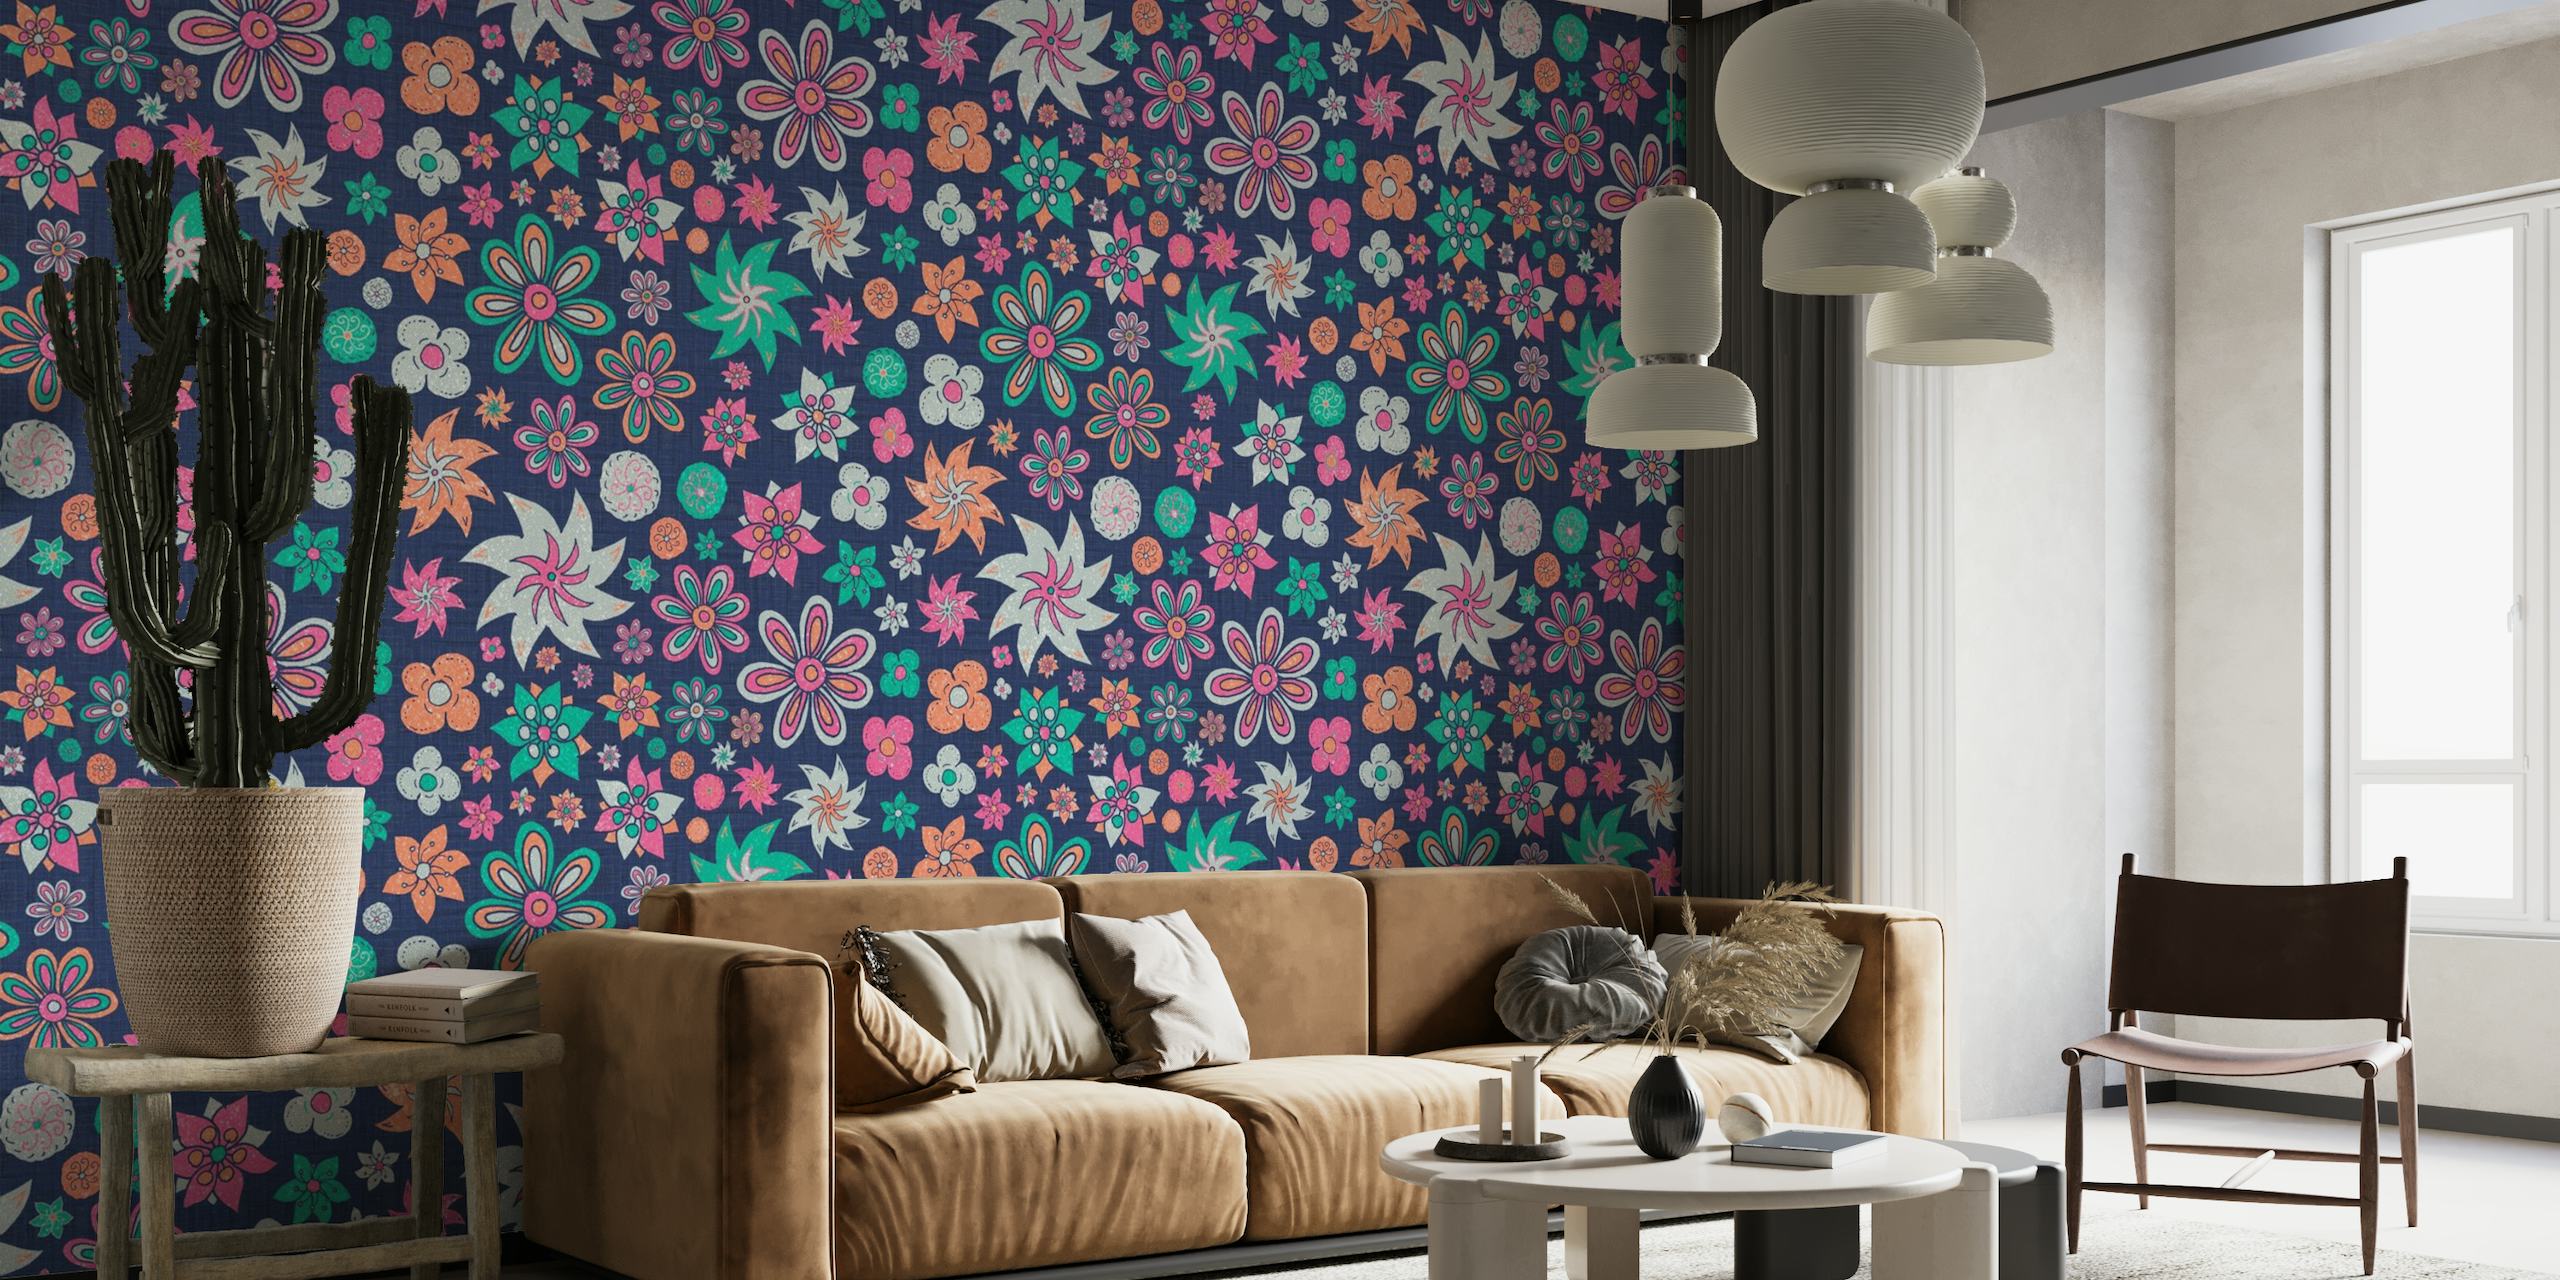 Conception de décoration murale de fleurs printanières maximalistes vibrantes et colorées